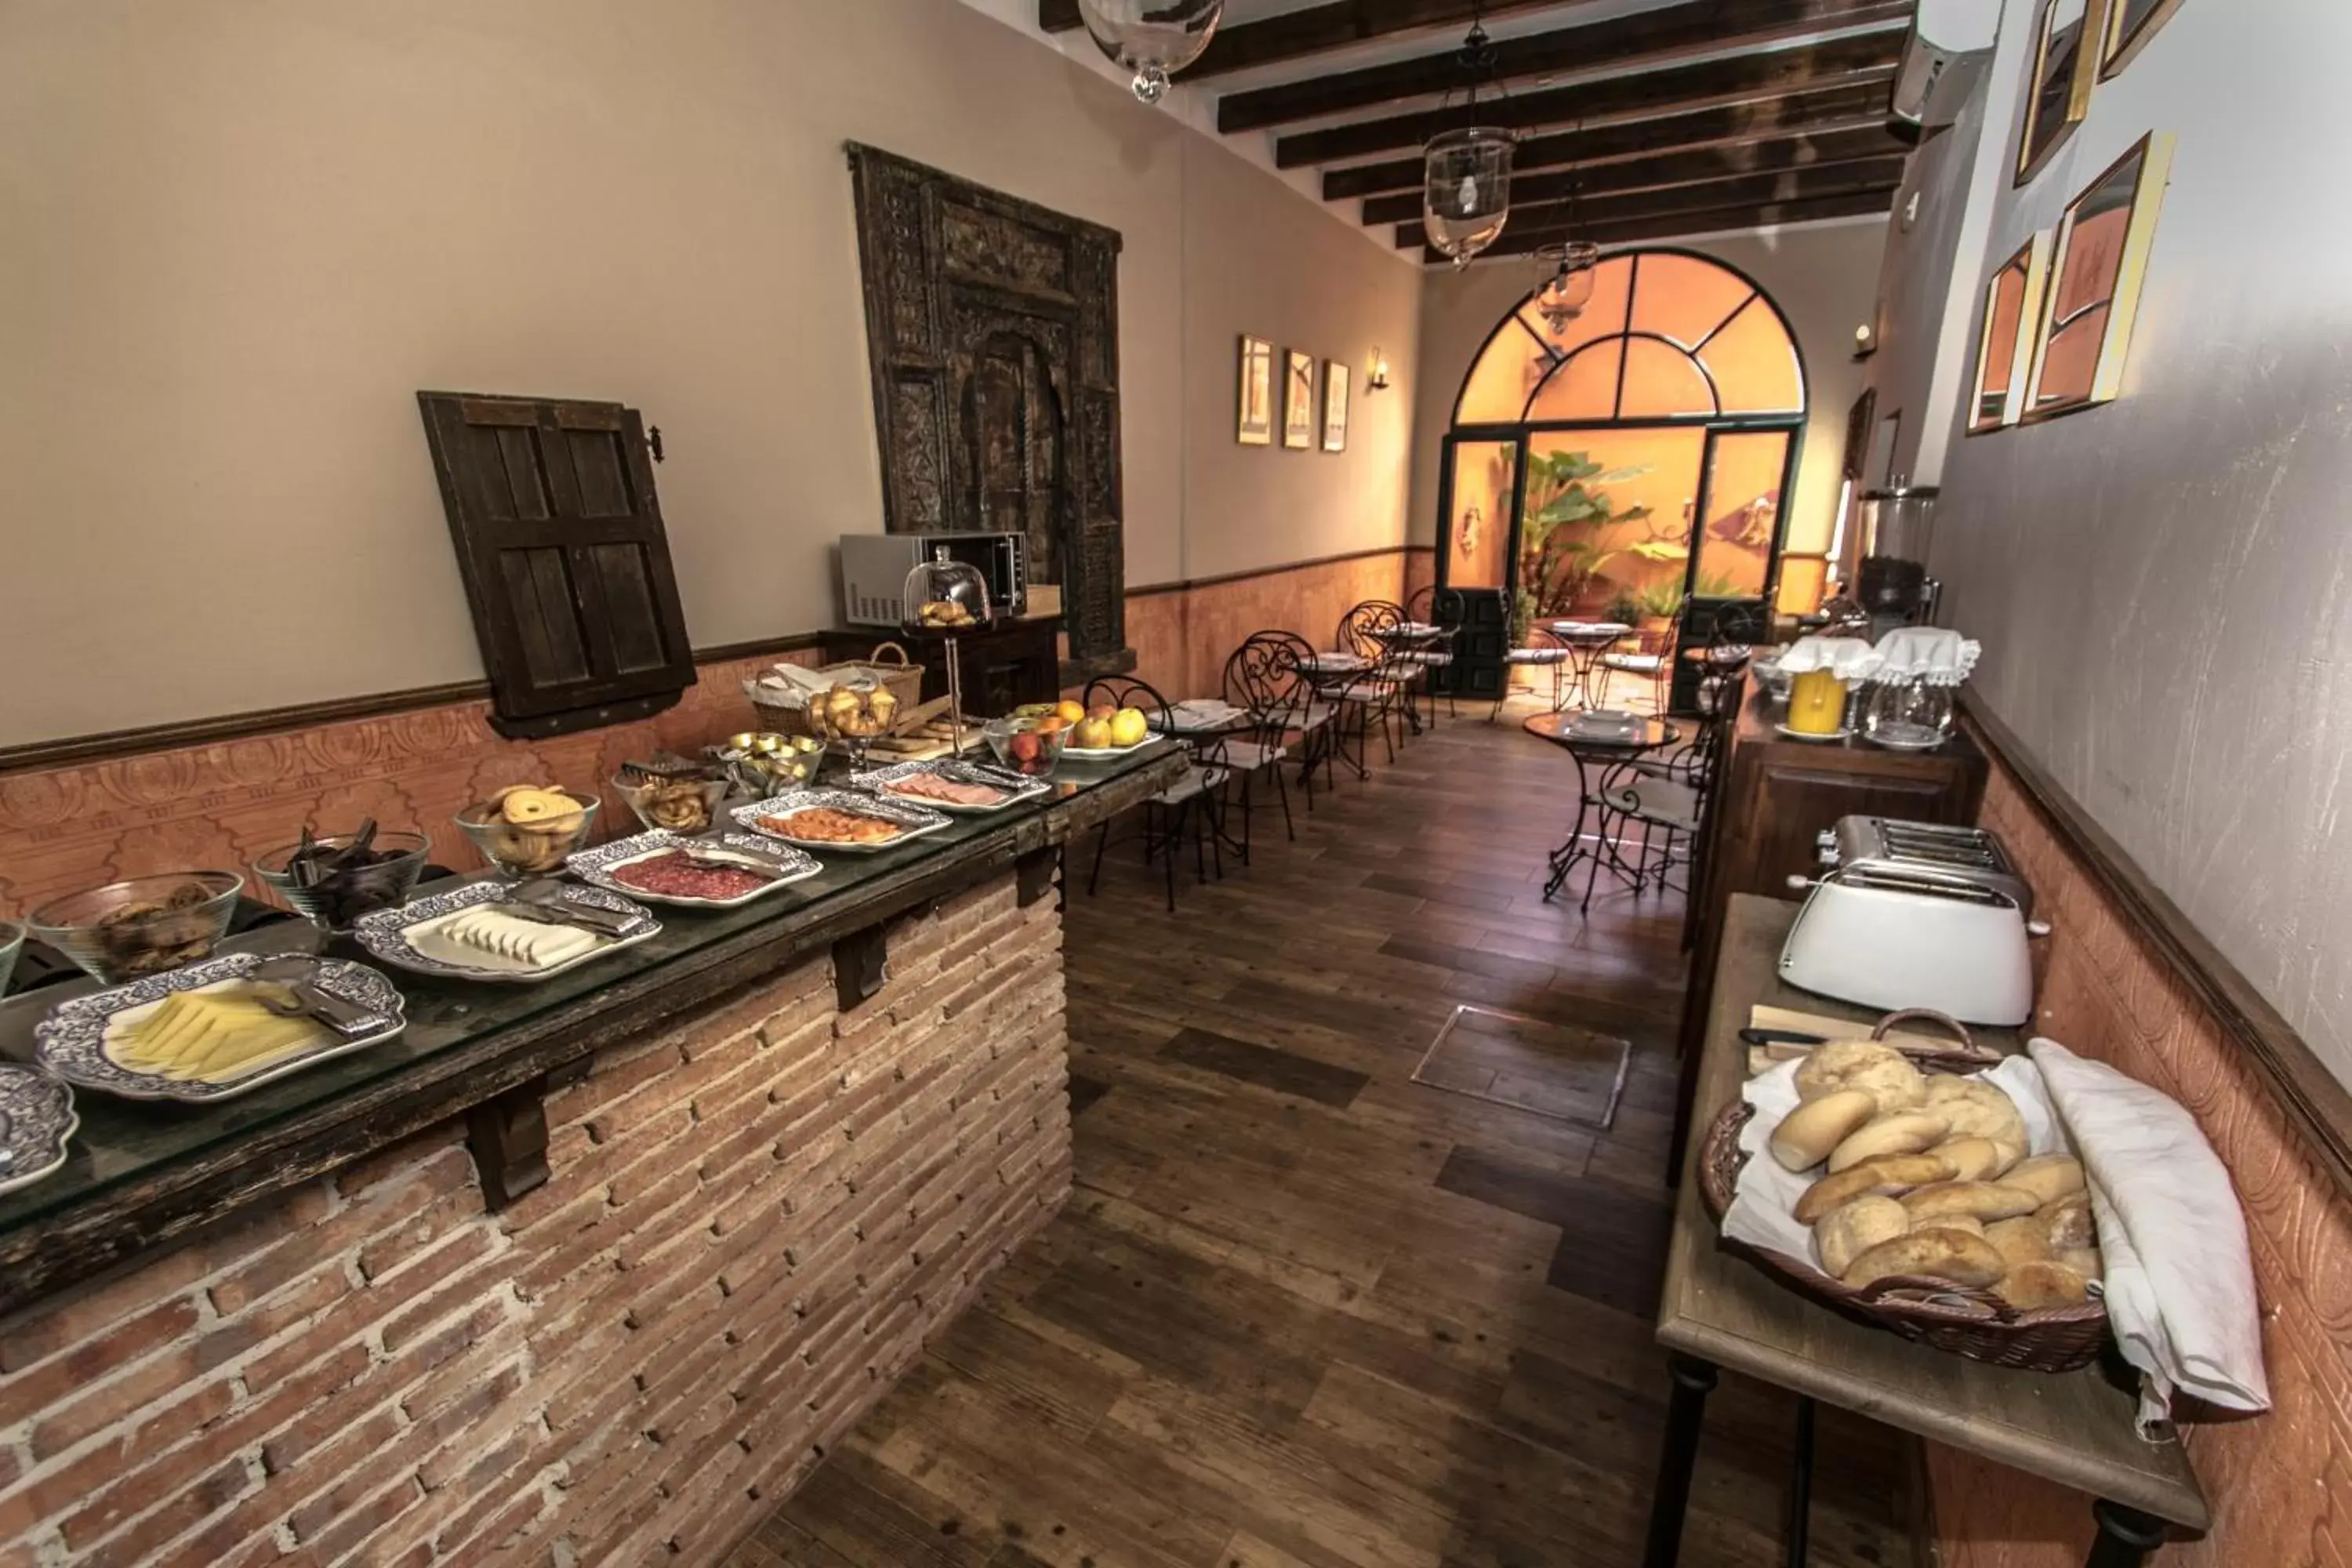 Food, Restaurant/Places to Eat in El Rincón de las Descalzas